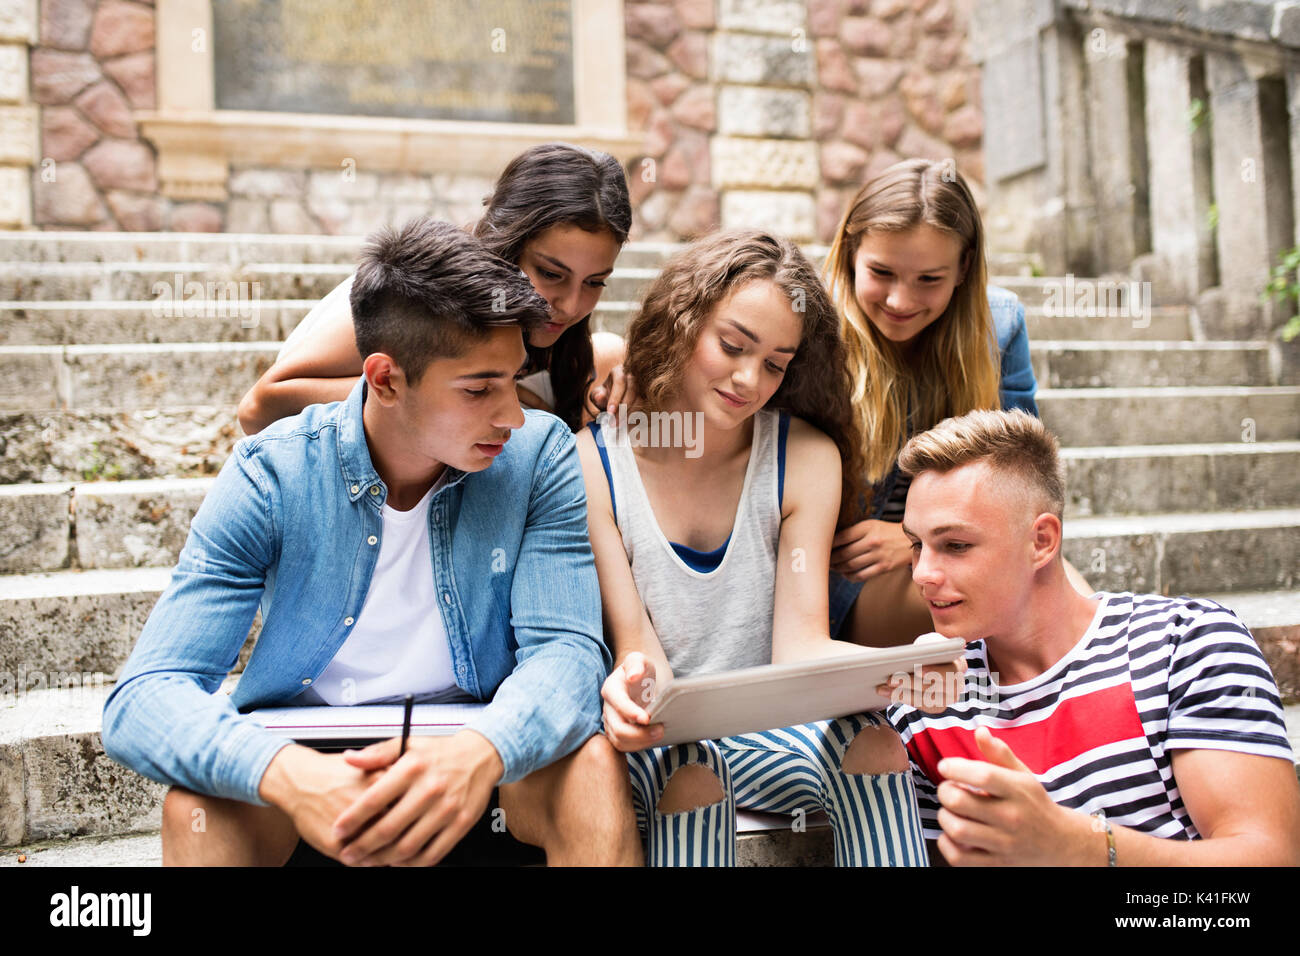 Gli studenti adolescenti con tavoletta seduti sui gradini di pietra. Foto Stock